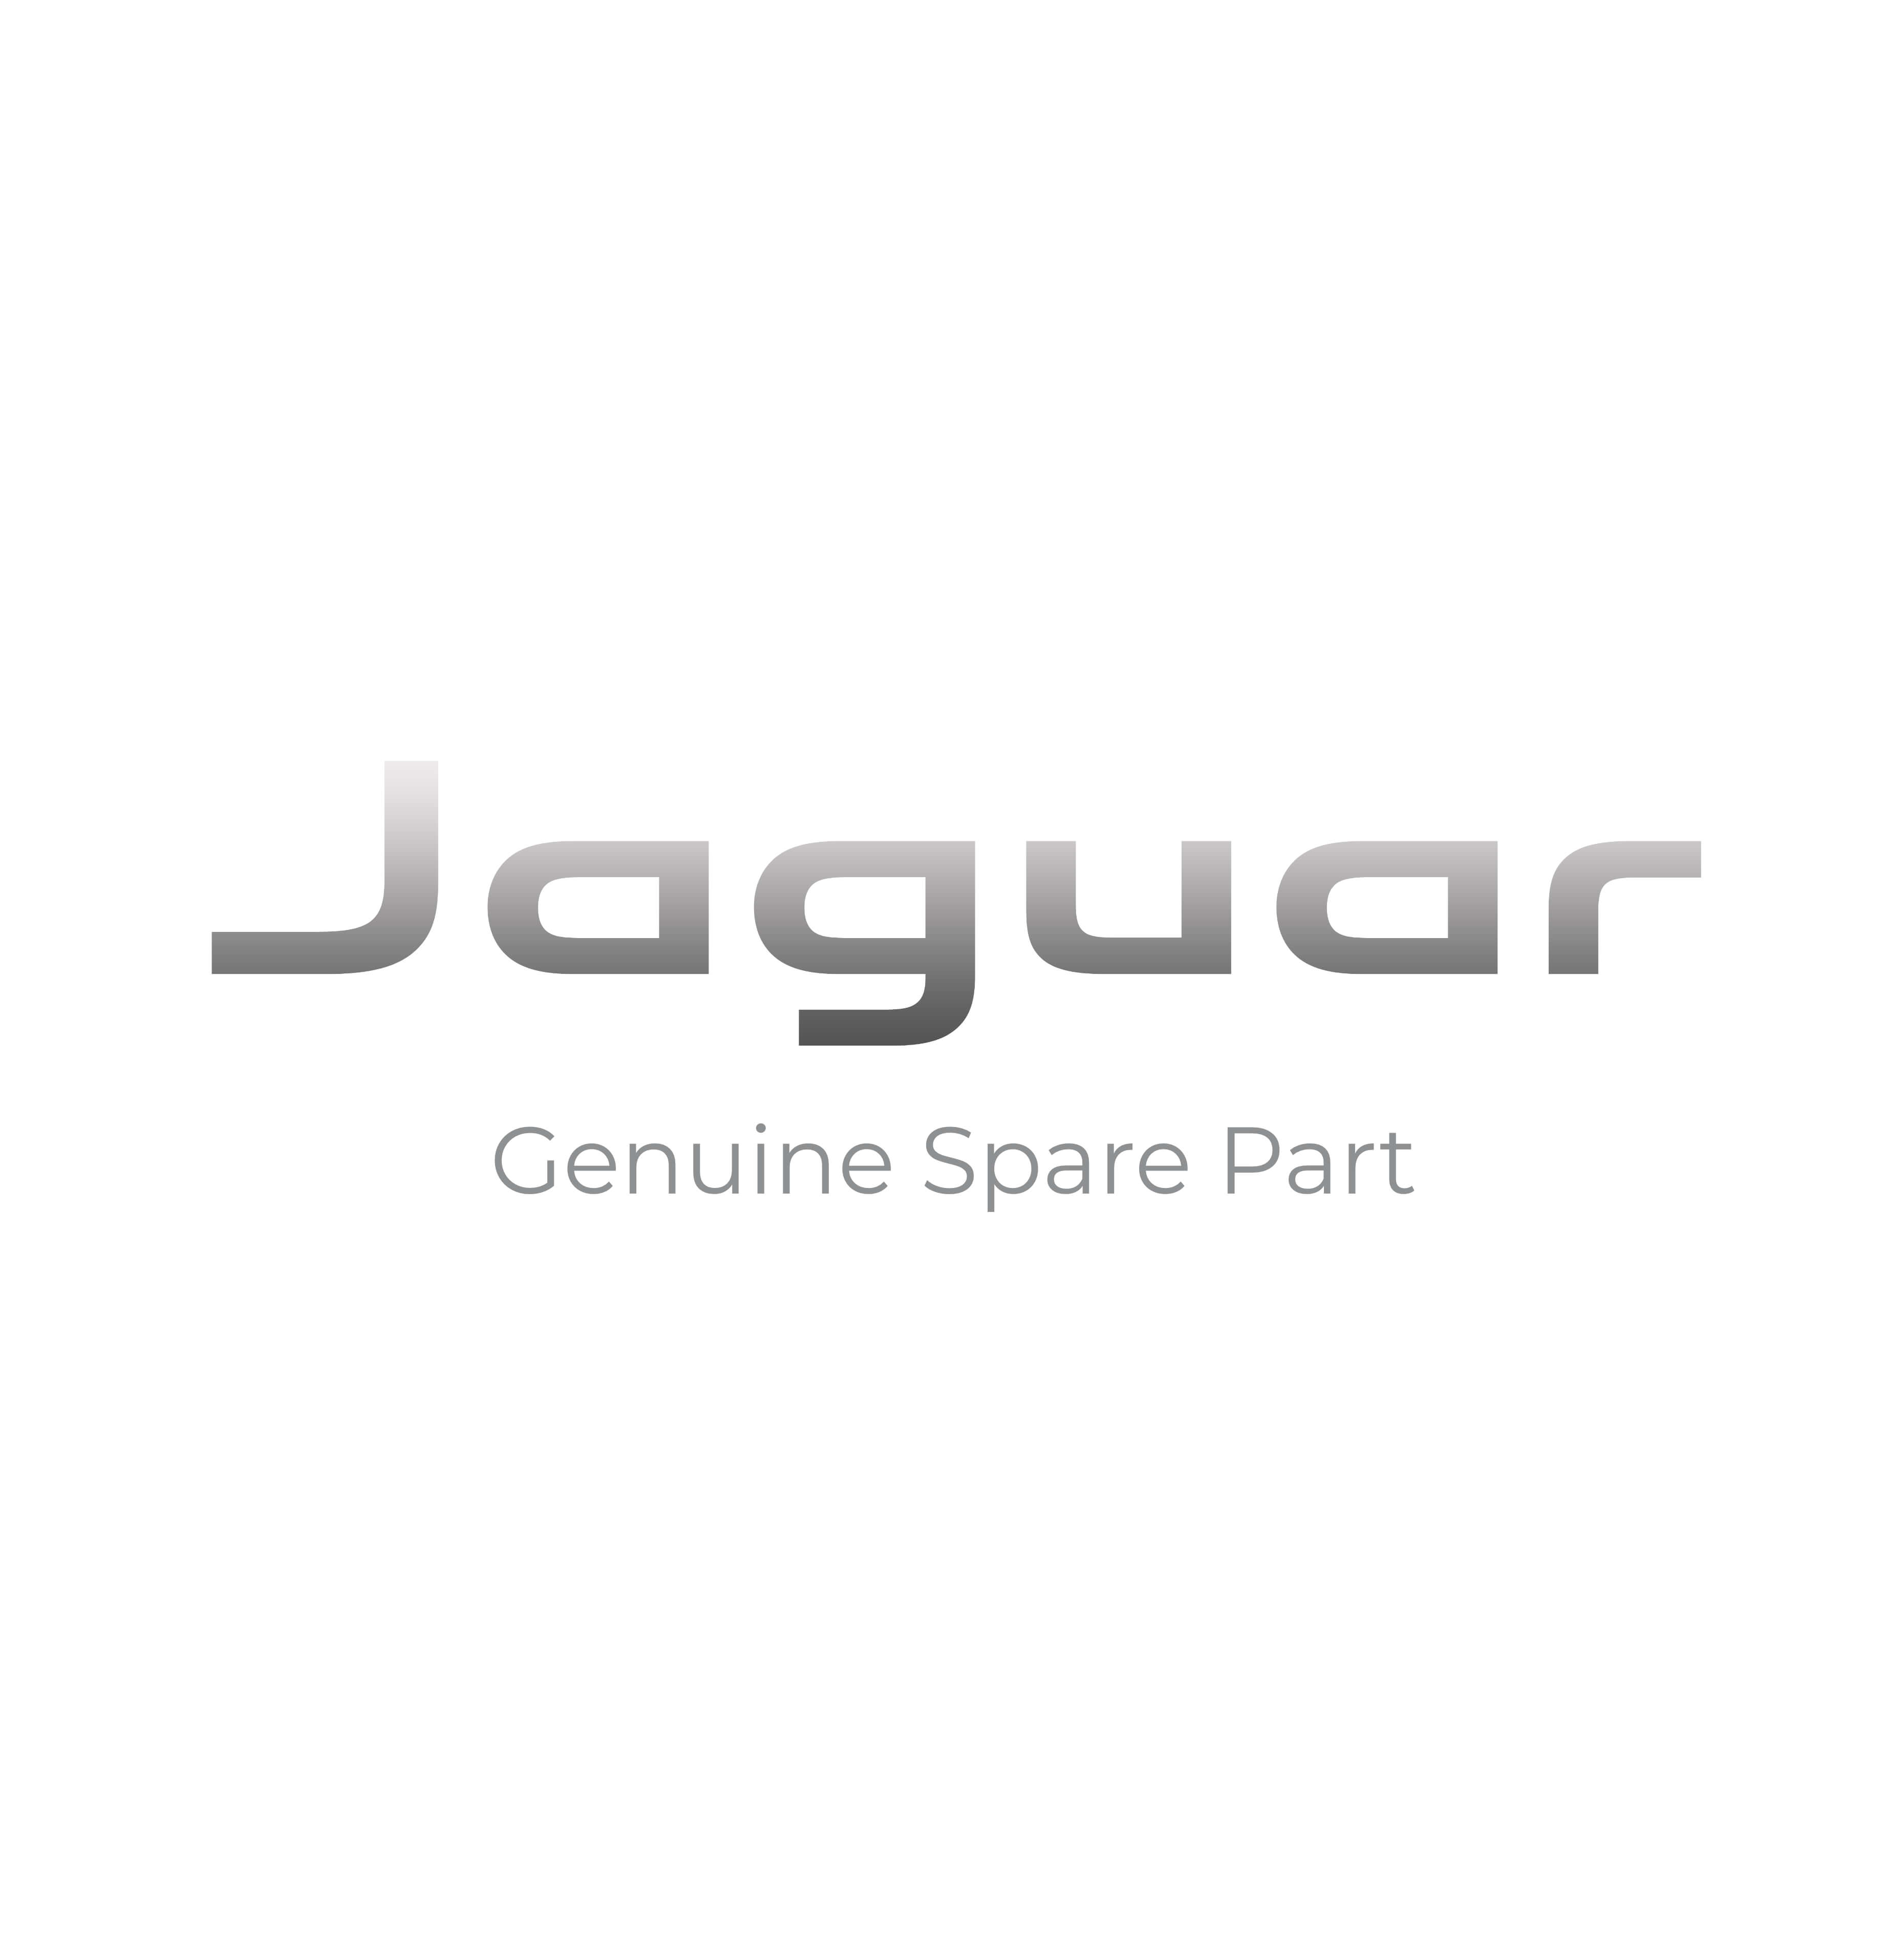 Jaguar 10836 Genuine